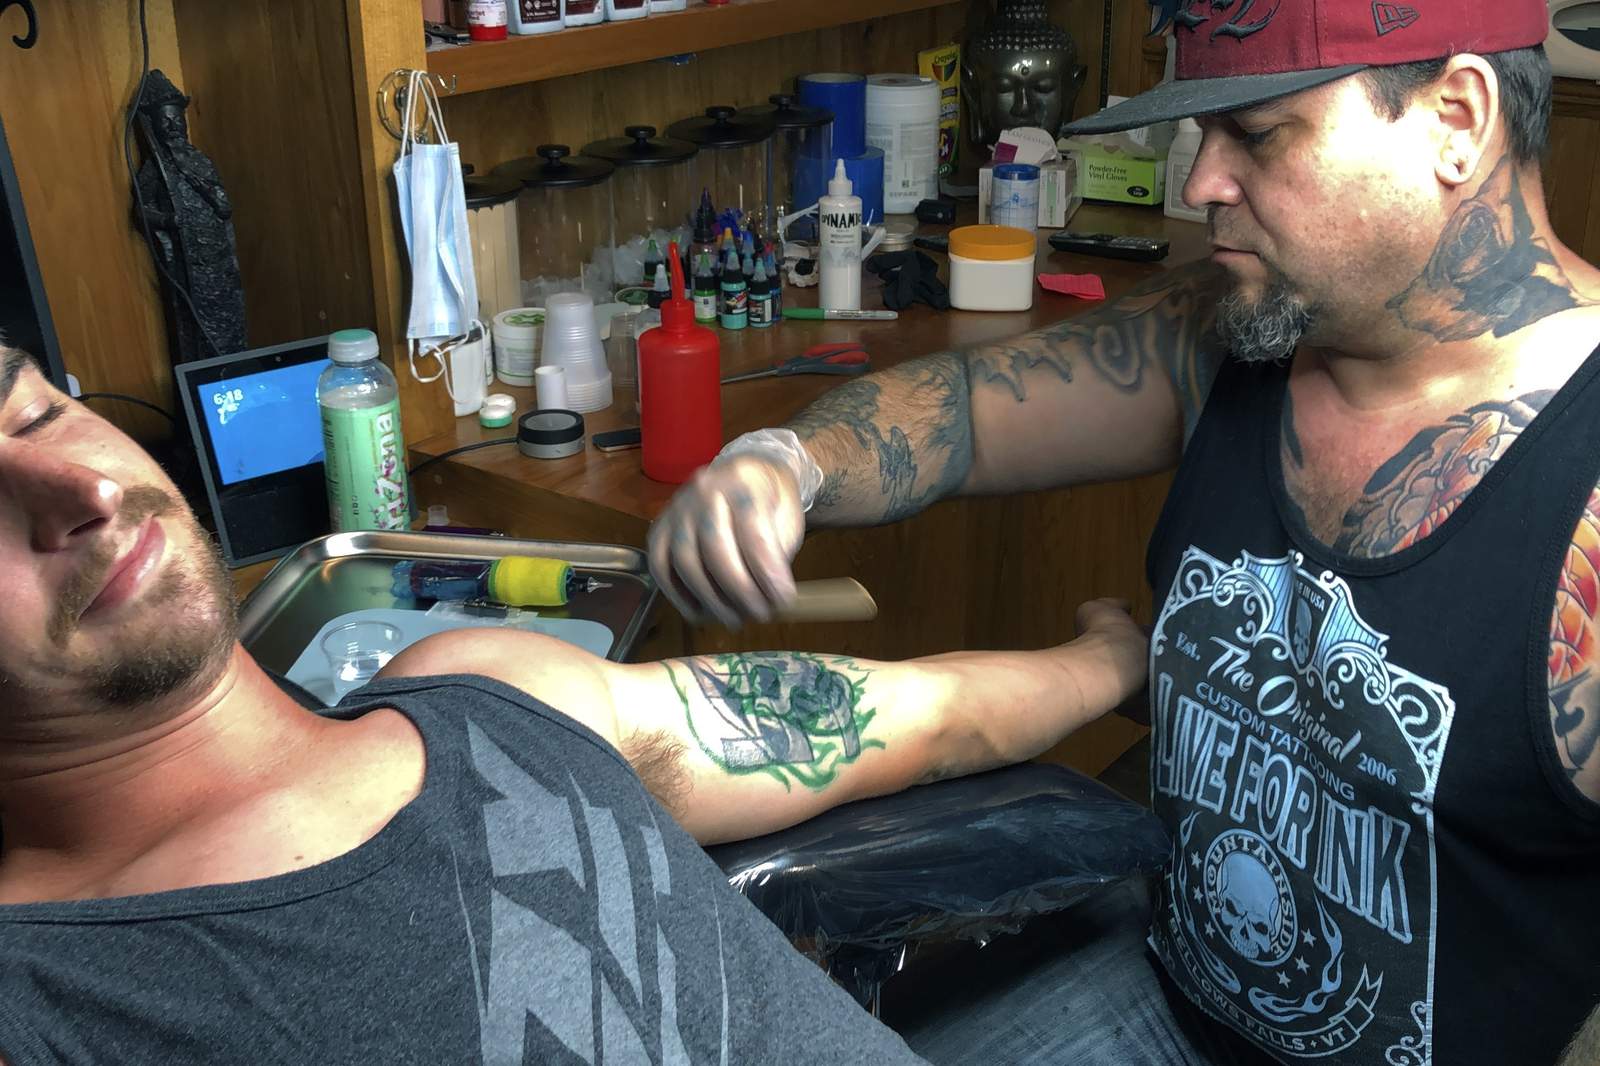 Tattoo artist sees bump in desire to erase hateful skin art